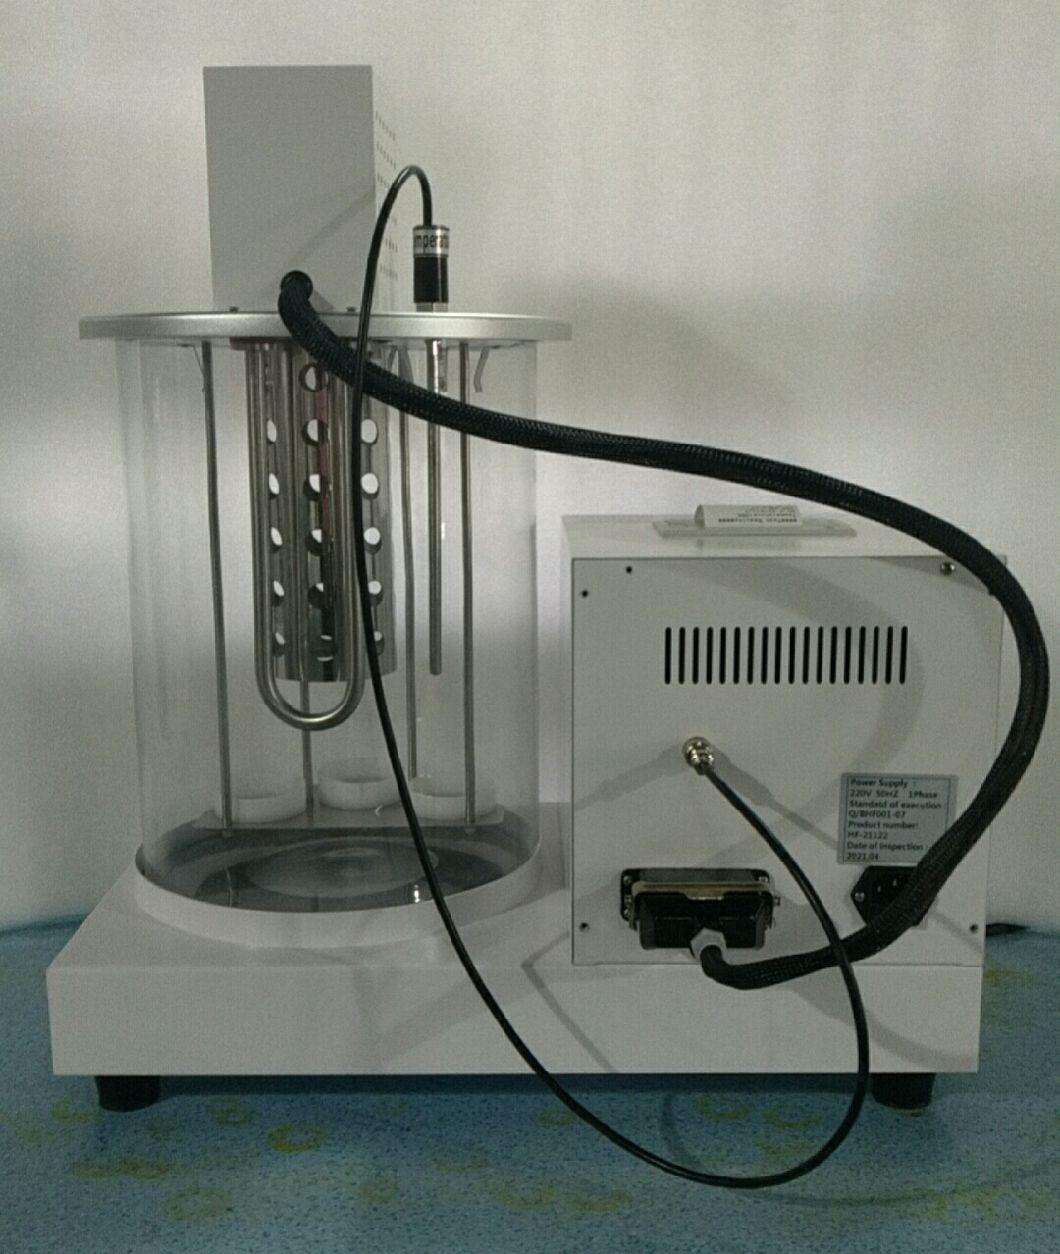 Automatic Kerosene Oil Density Meter Using ASTM D1298